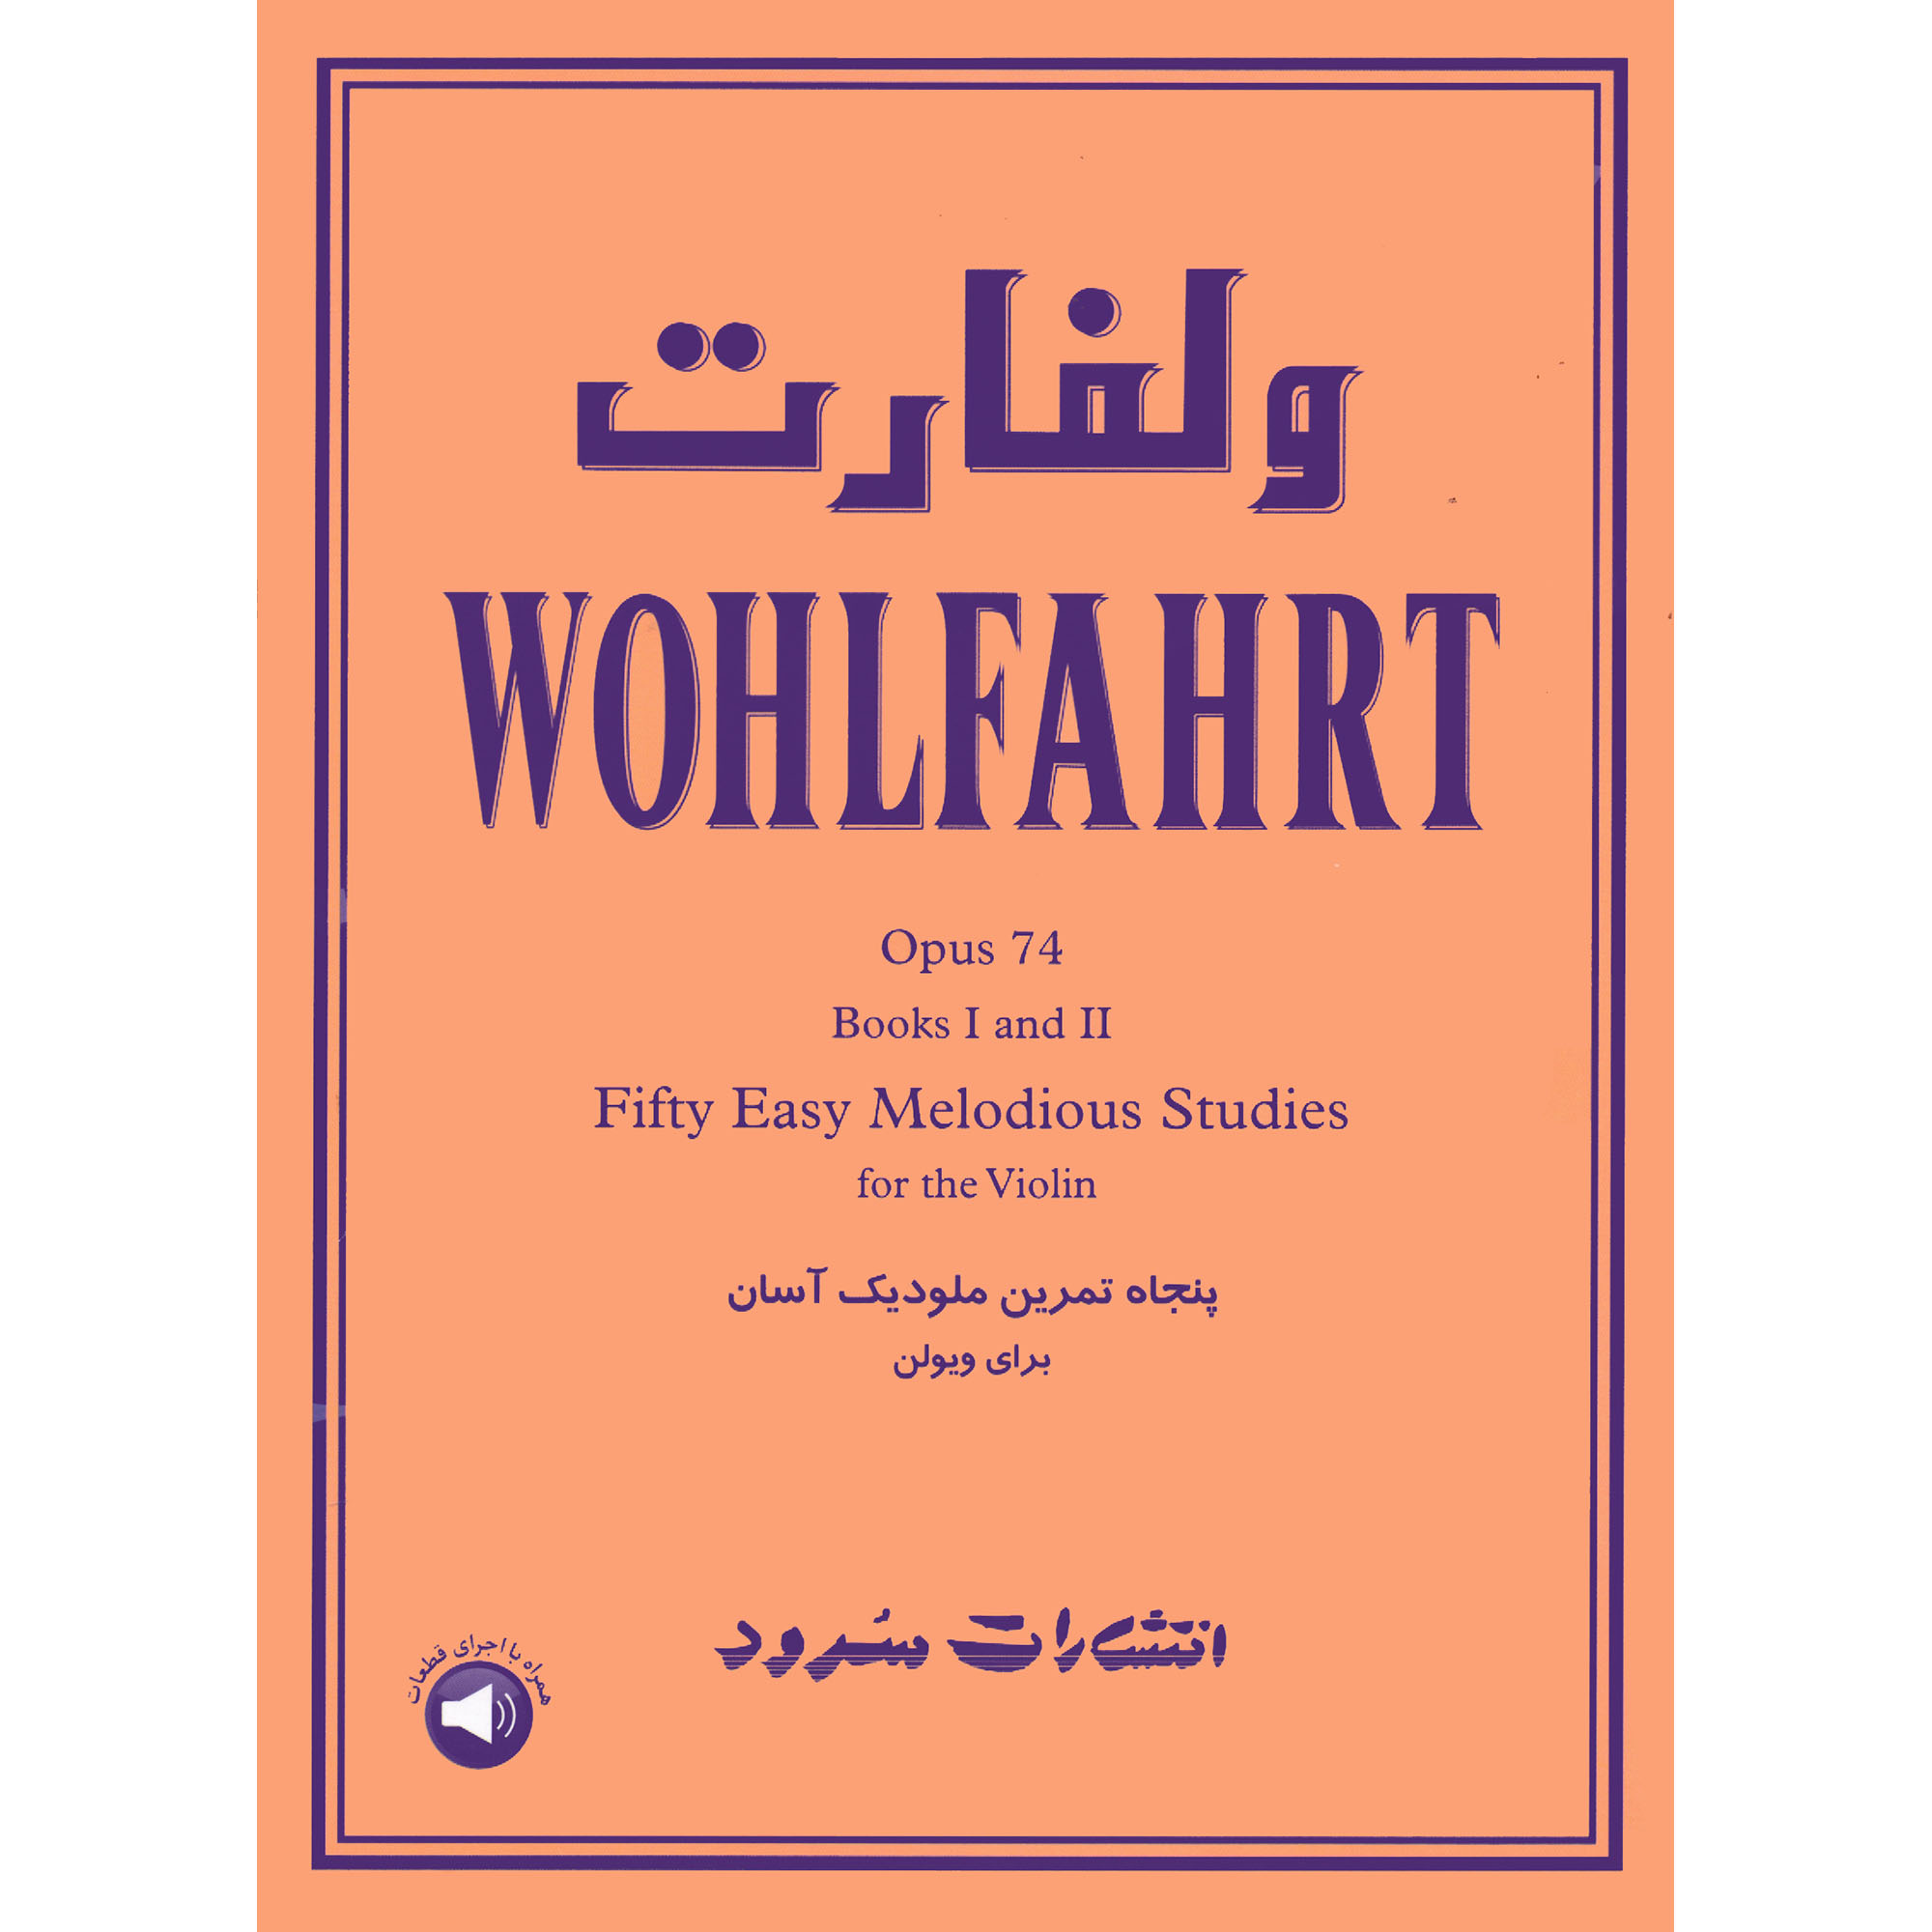 کتاب ولفارت پنجاه تمرین ملودیک آسان برای ویولن اپوس 74 اثر فرانتس ولفارت نشر سرود